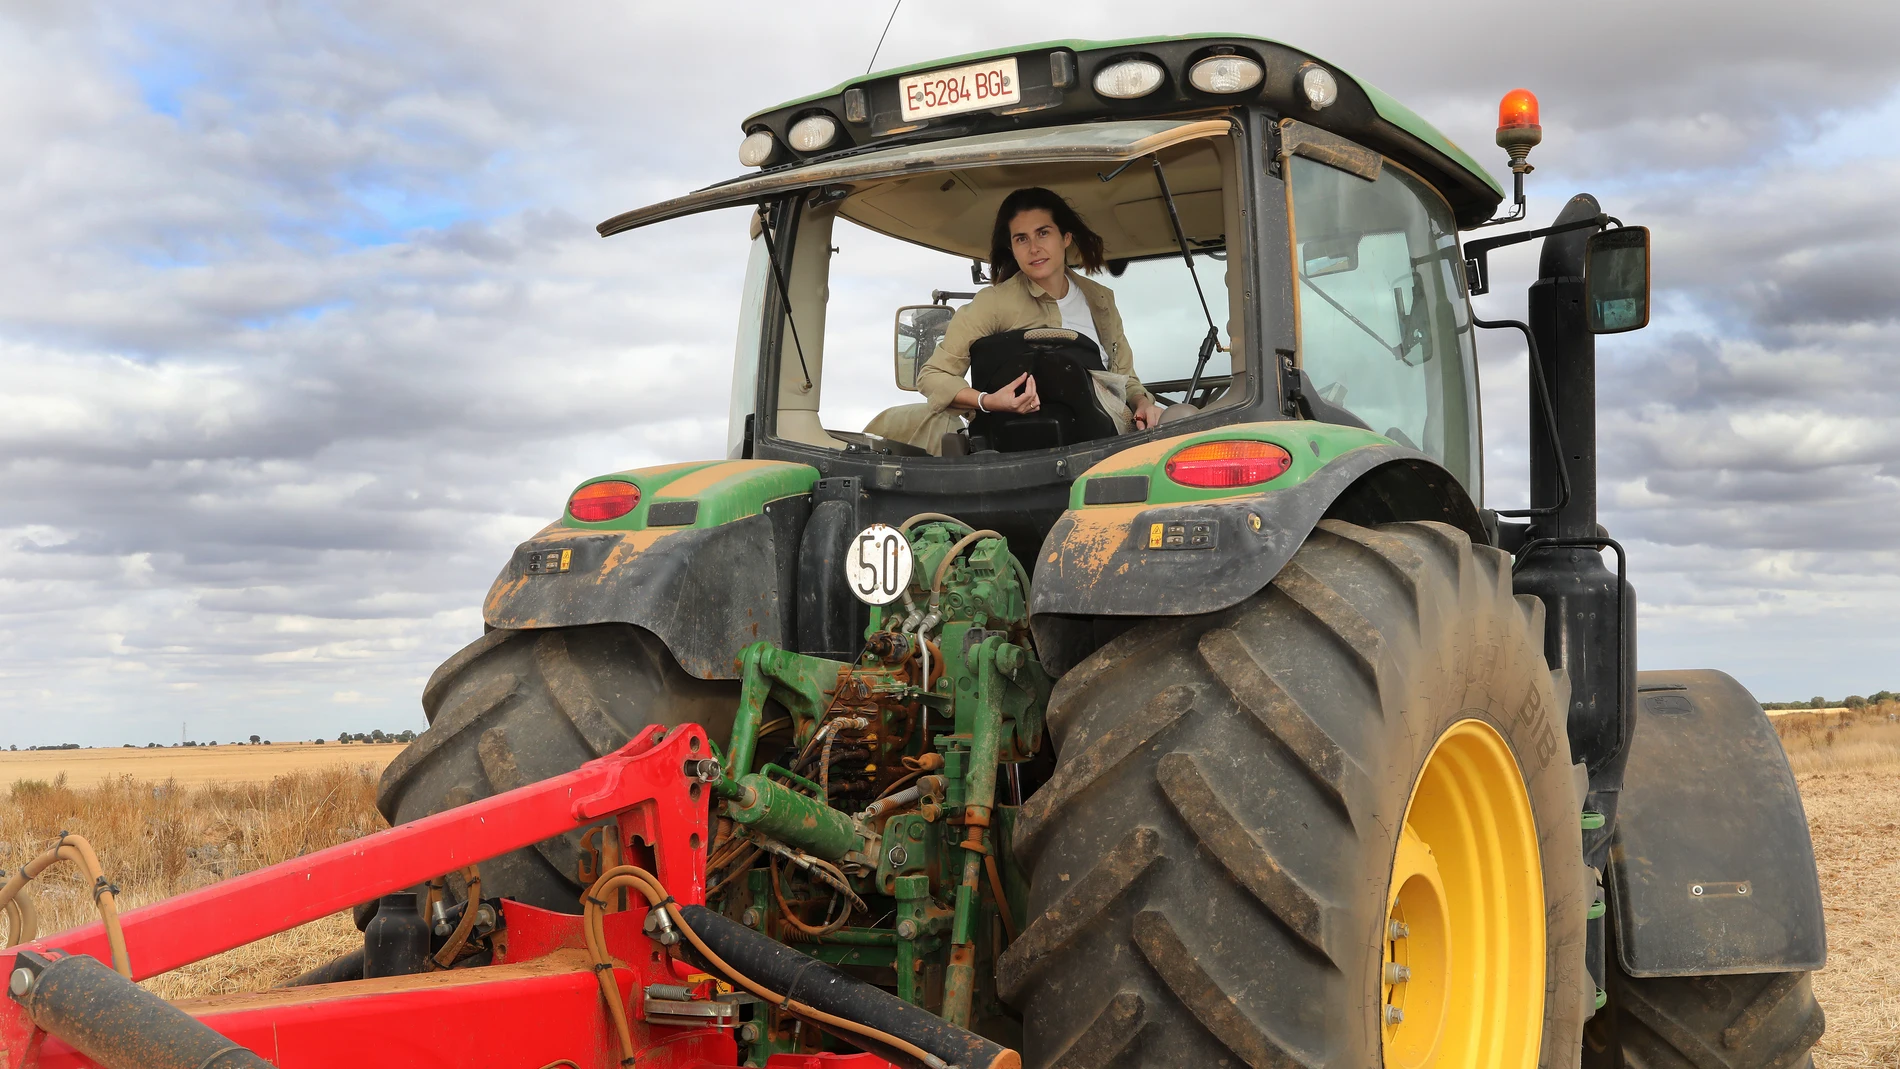 La ingeniero agrónomo de Santa Cecilia del Alcor y de Valdespina (Palencia), Blanca Martín, creadora de una cuenta de Instagram para visibilizar a la mujer en el mundo rural